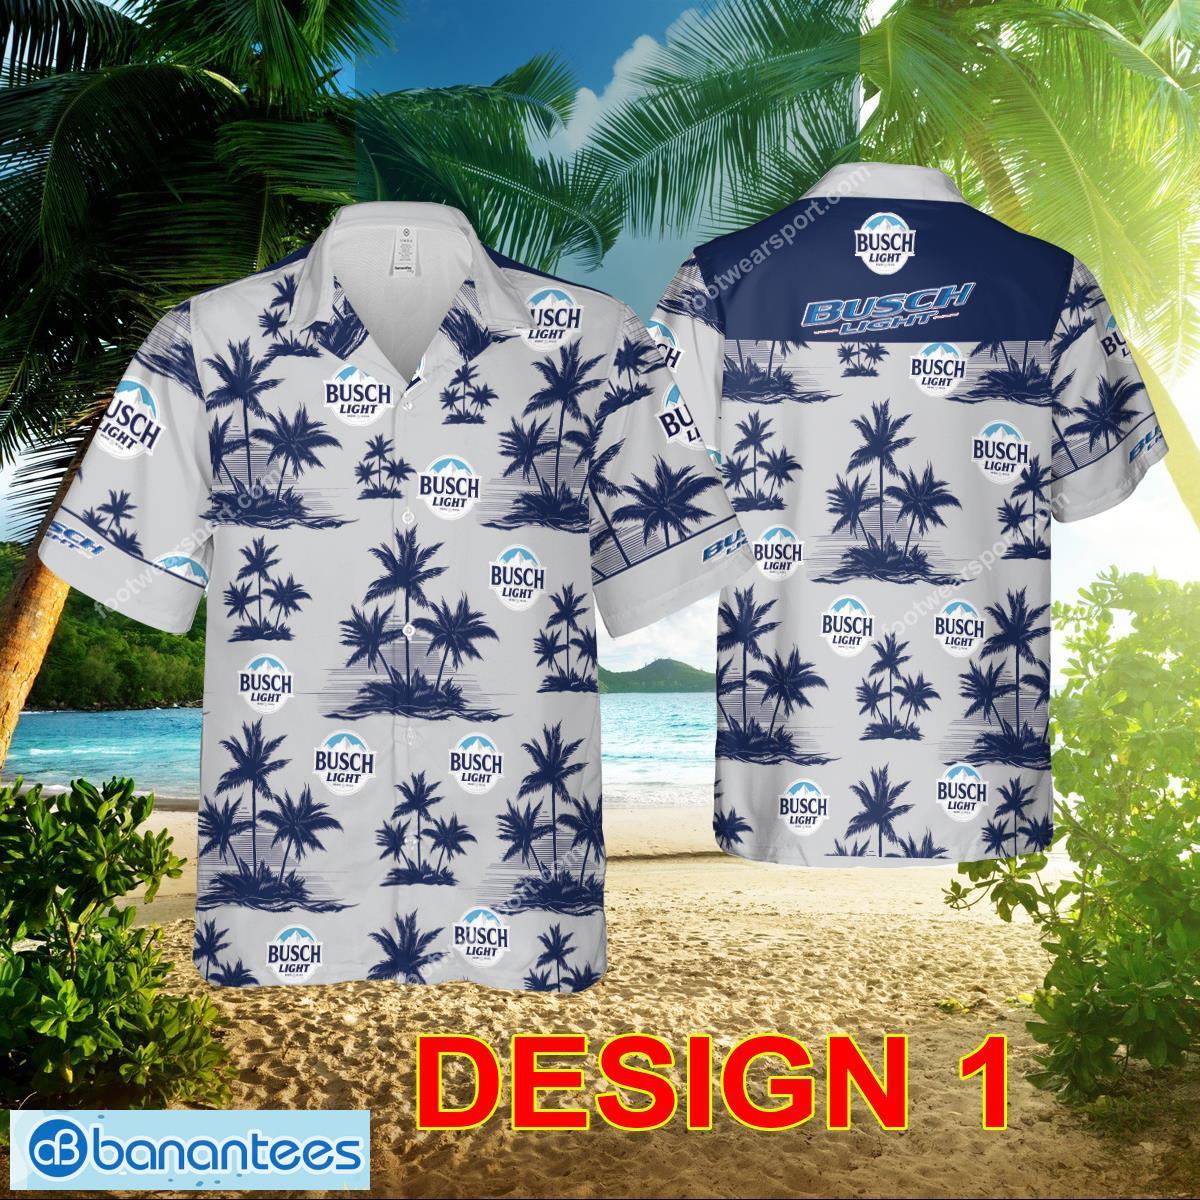 Busch Light Beer Hawaiian Shirt Pattern Gift Summer - Style 1 Busch Light Beer AOP Hawaiian Shirt Gift For Fans